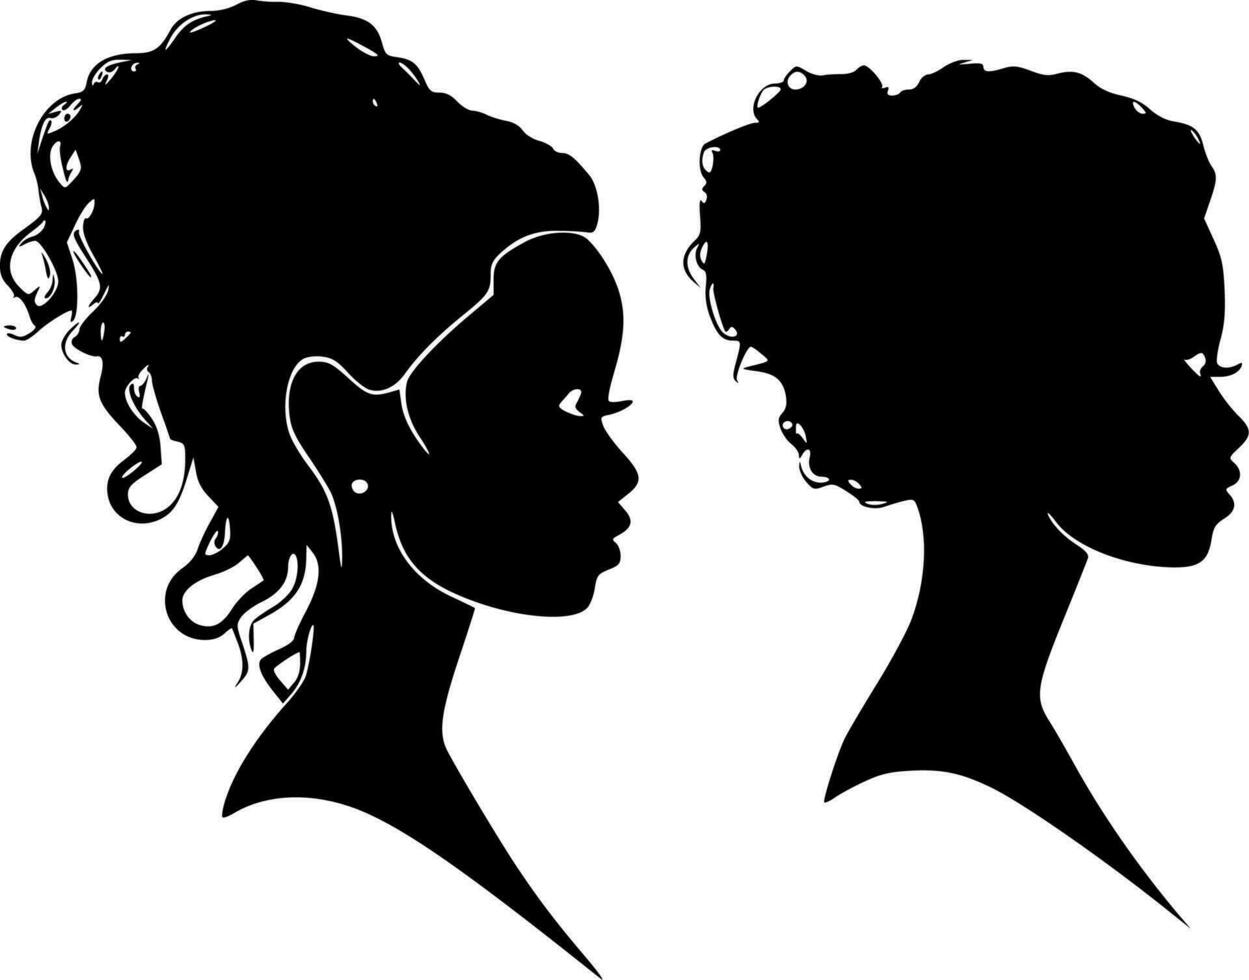 noir femmes, noir et blanc vecteur illustration